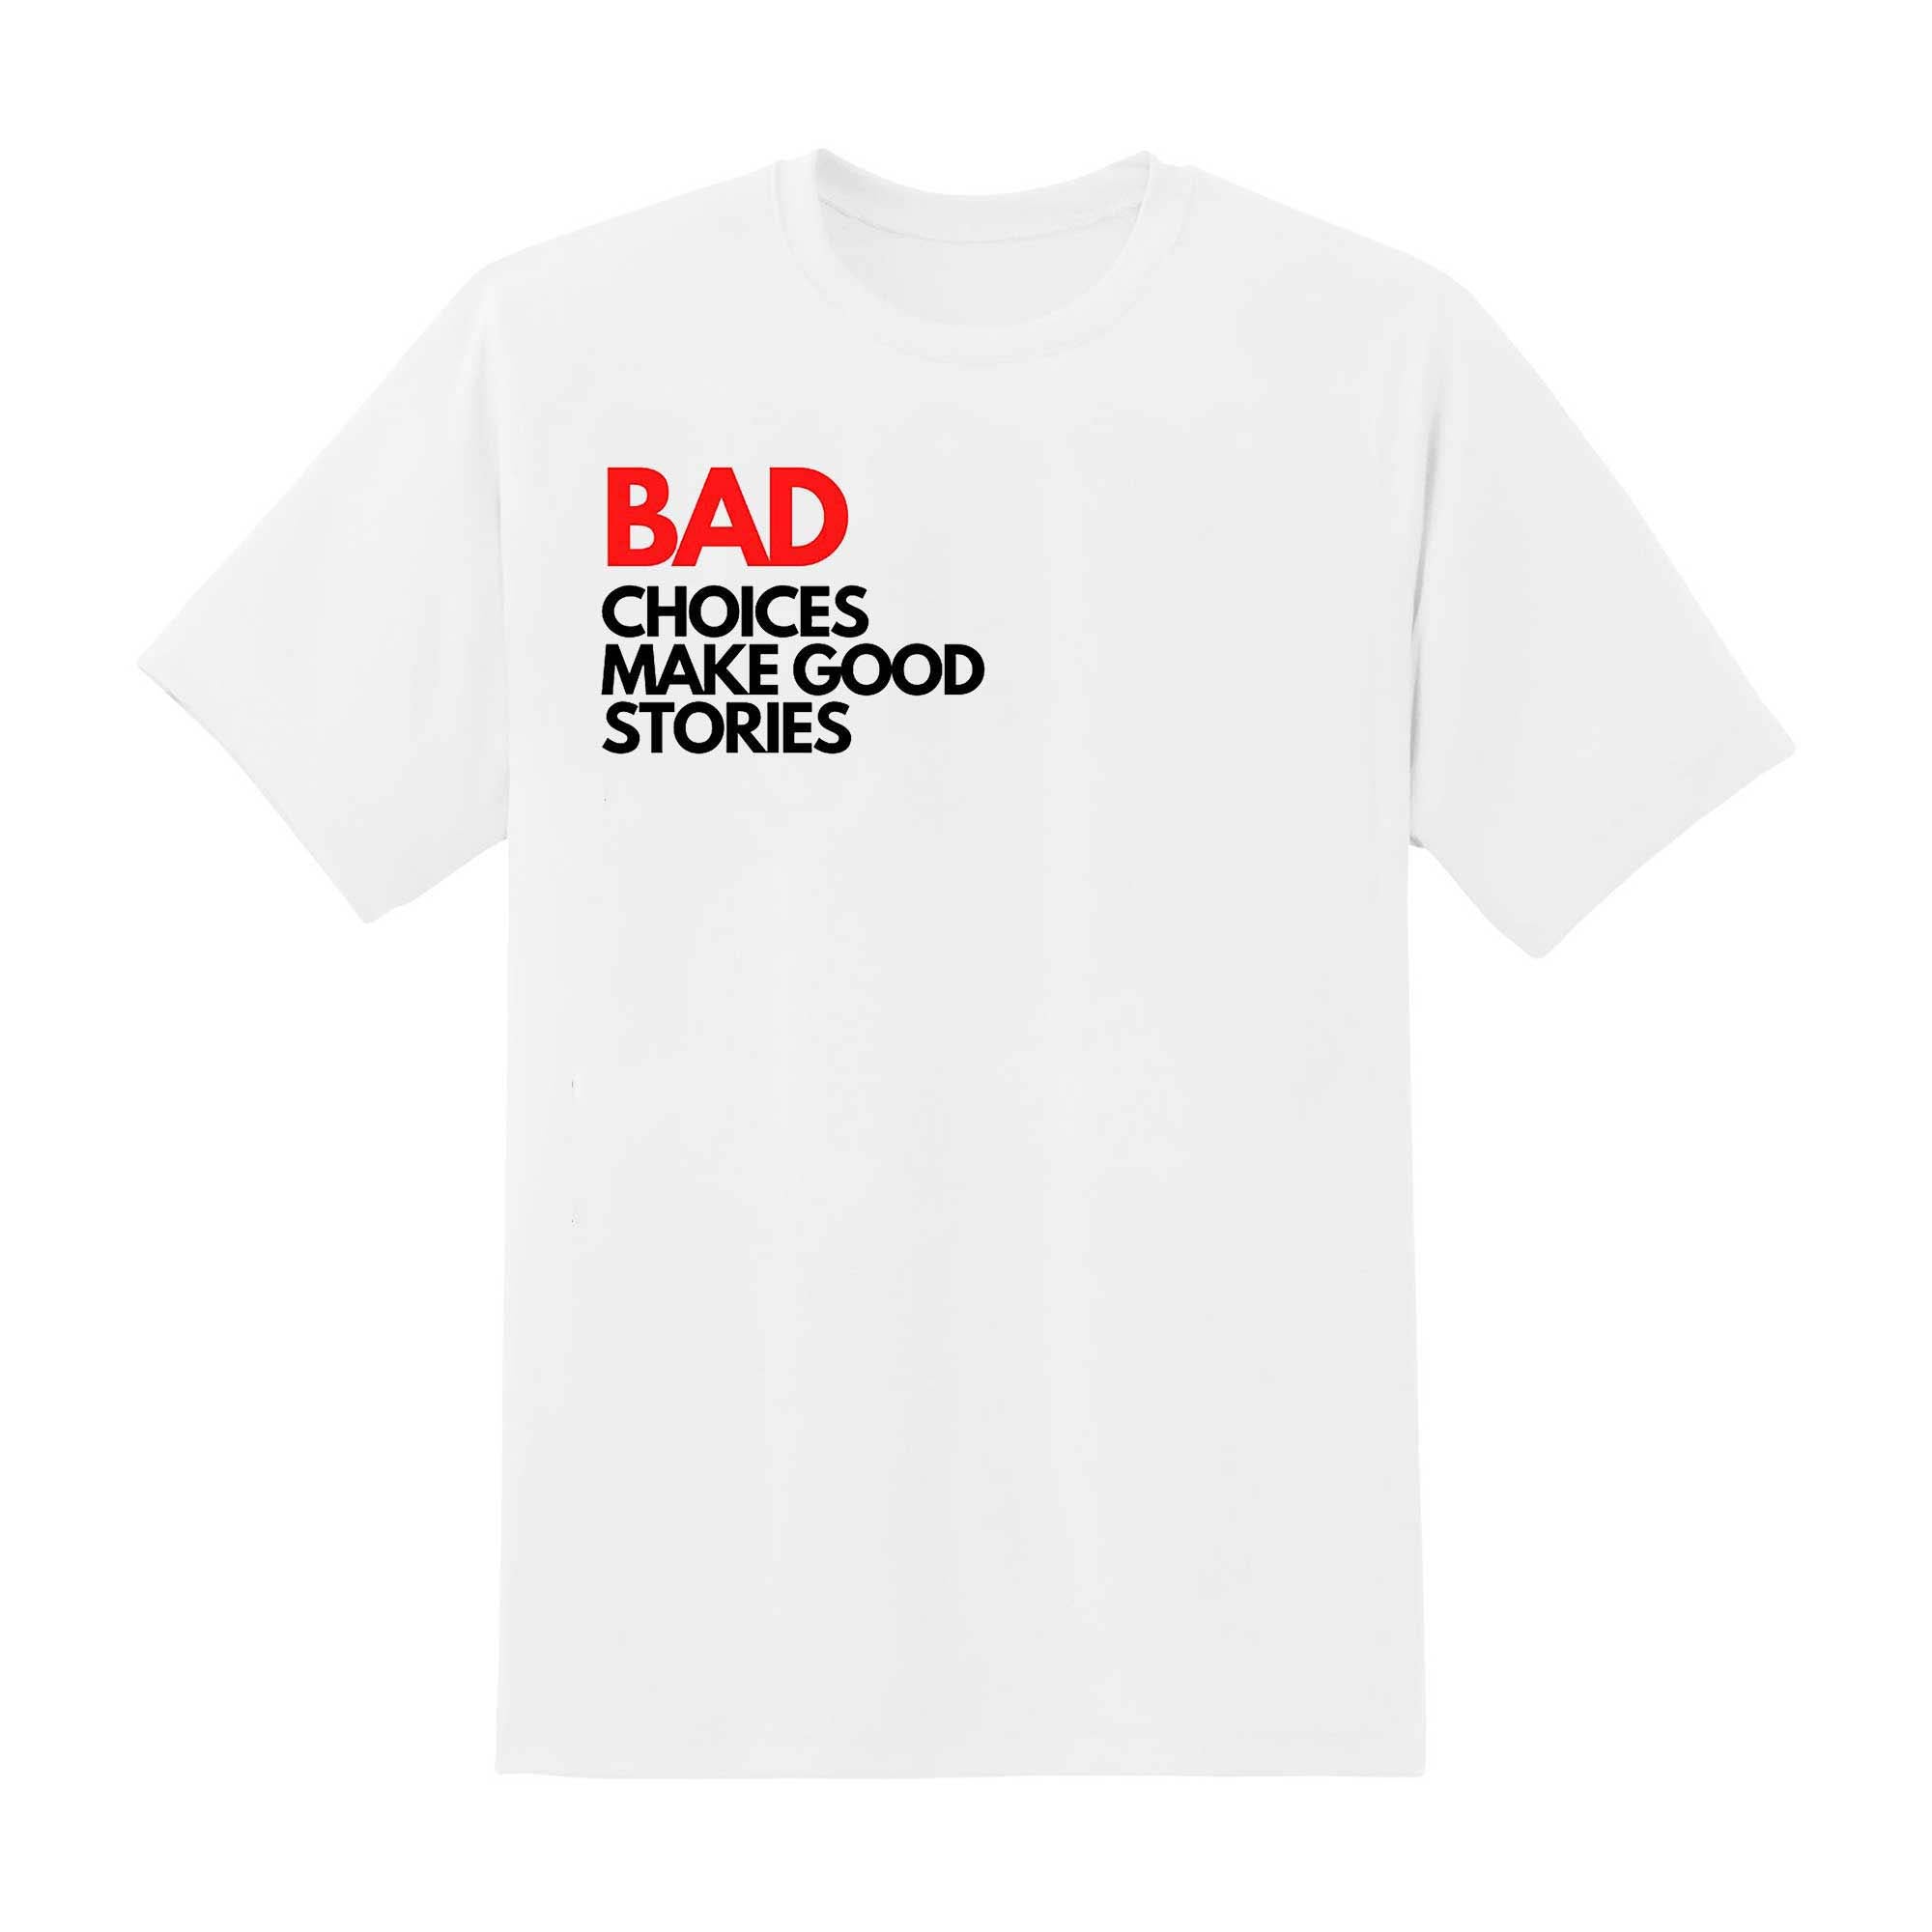 Skitongift Skitongift Bad Choices Make Good Stories Classic T Shirt Funny Shirts